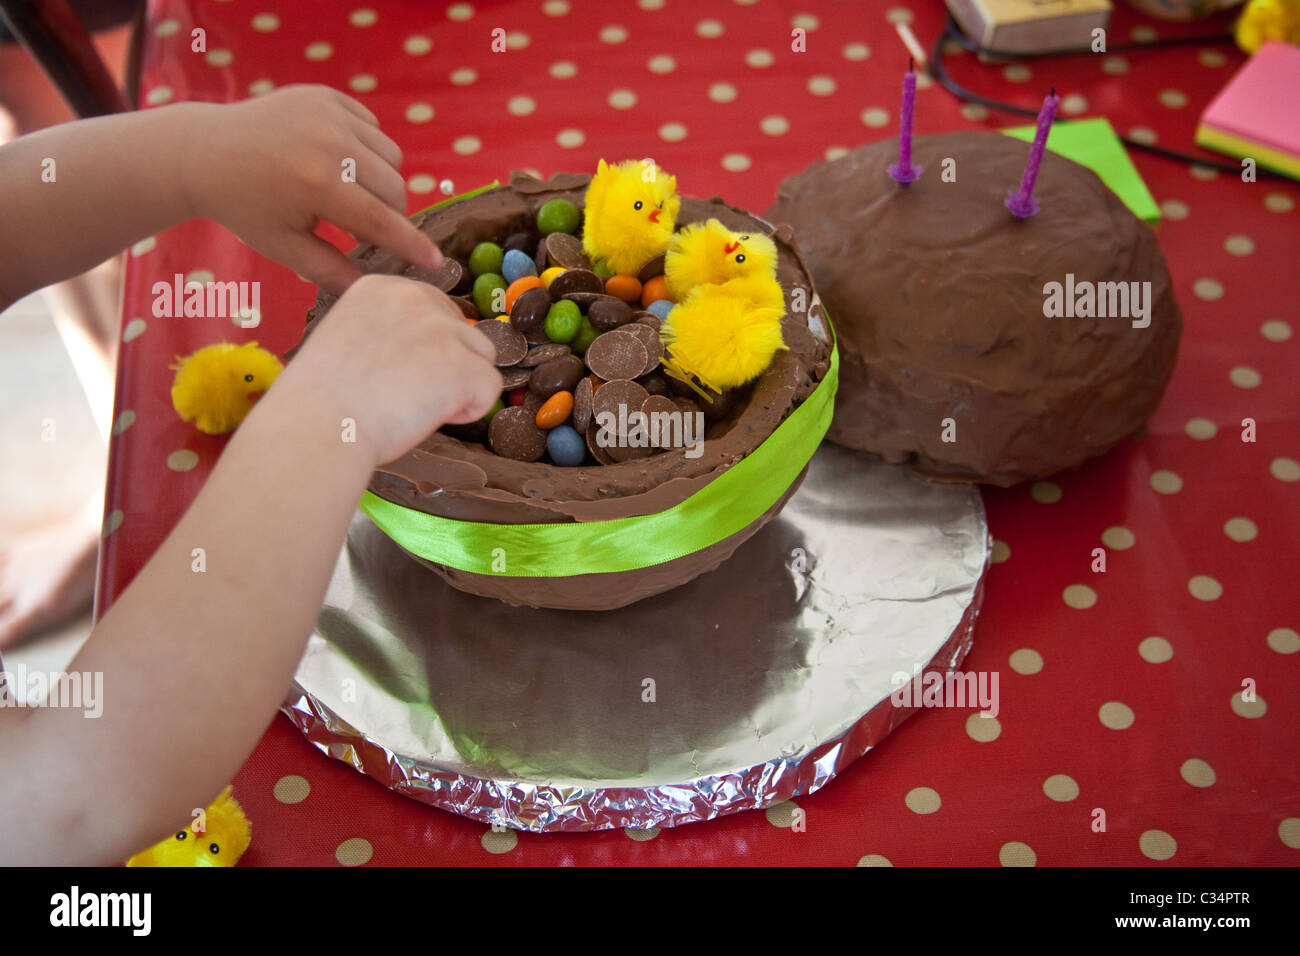 Gâteau aux œufs de Pâques au chocolat, gâteau rond fait maison en forme de boule. Banque D'Images